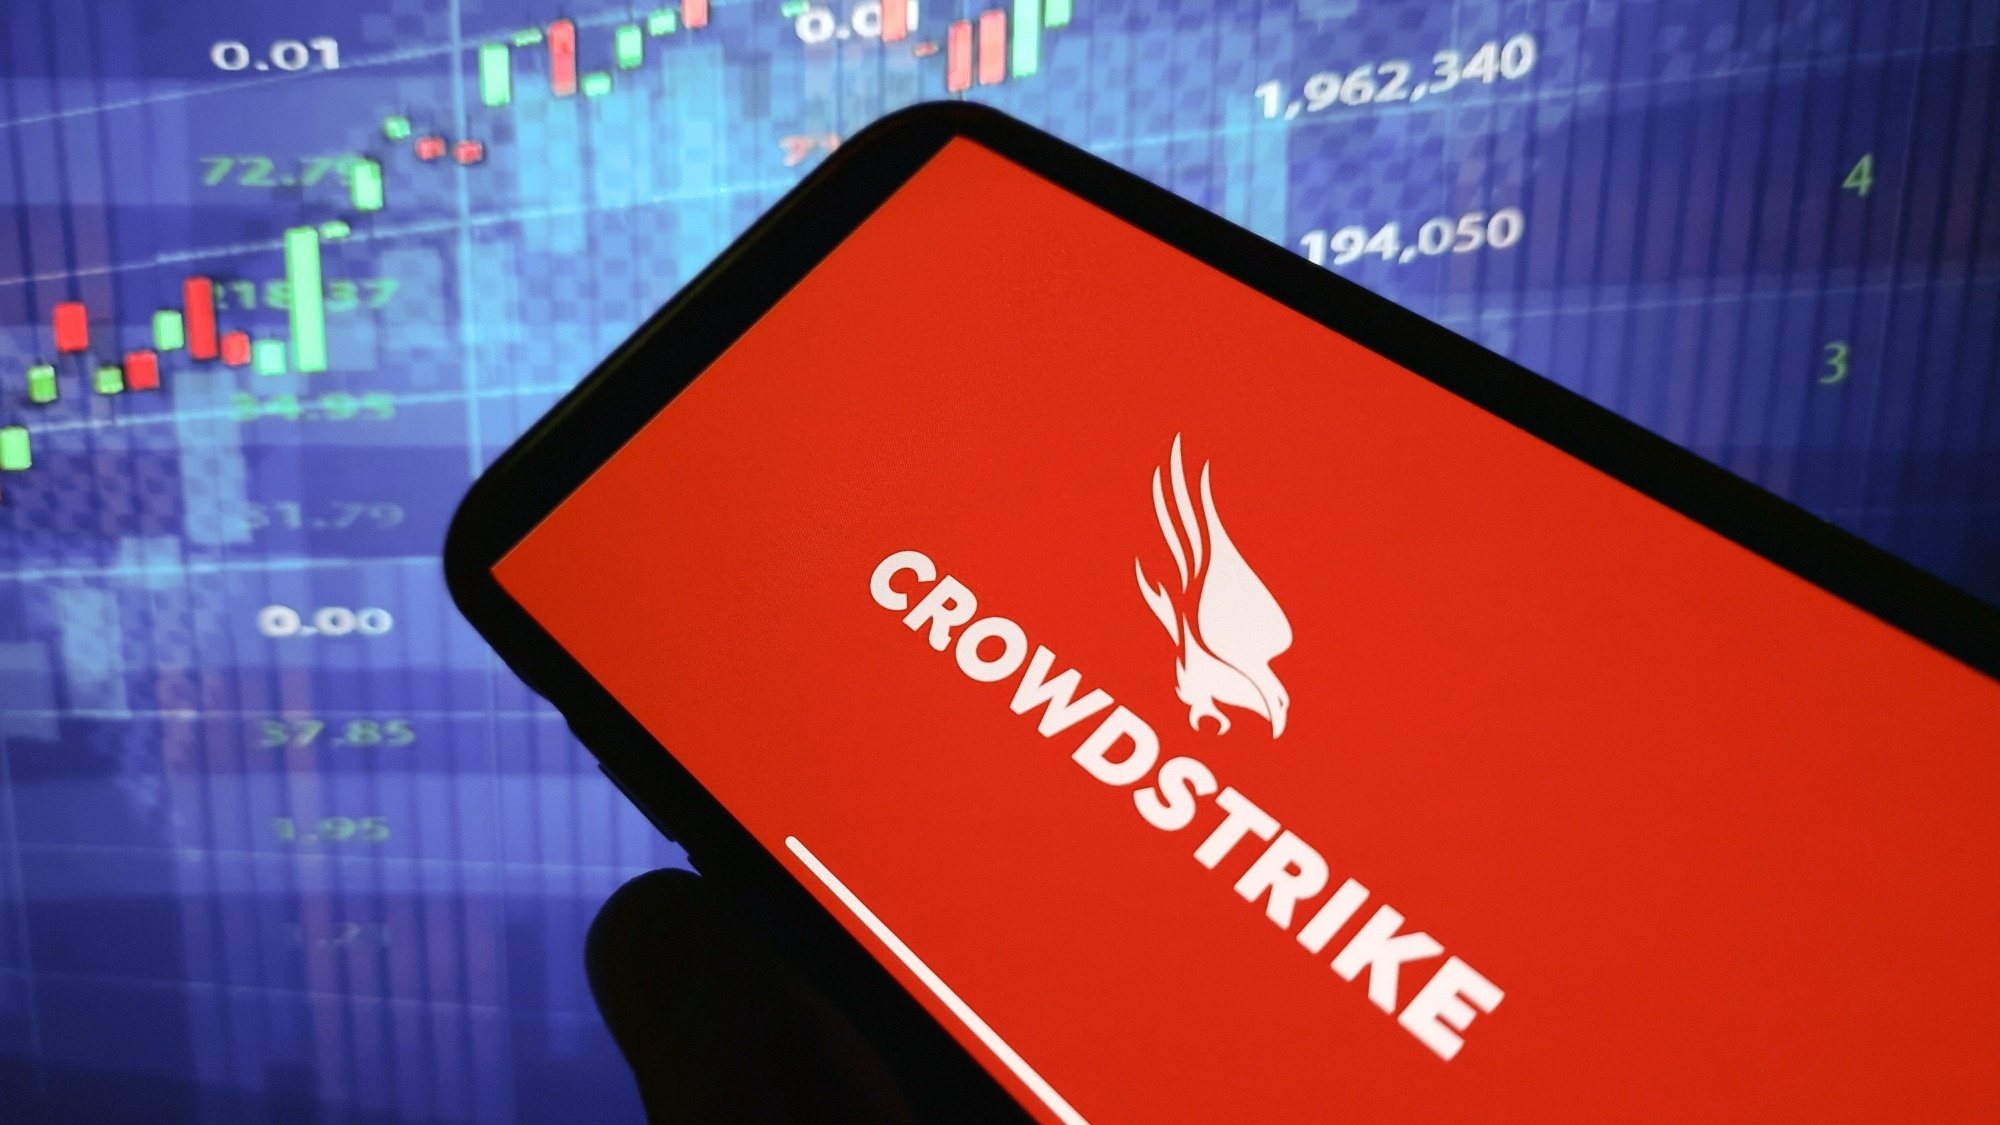 Logotipo Crowdstrike em vermelho em um smartphone na frente de um fundo azul